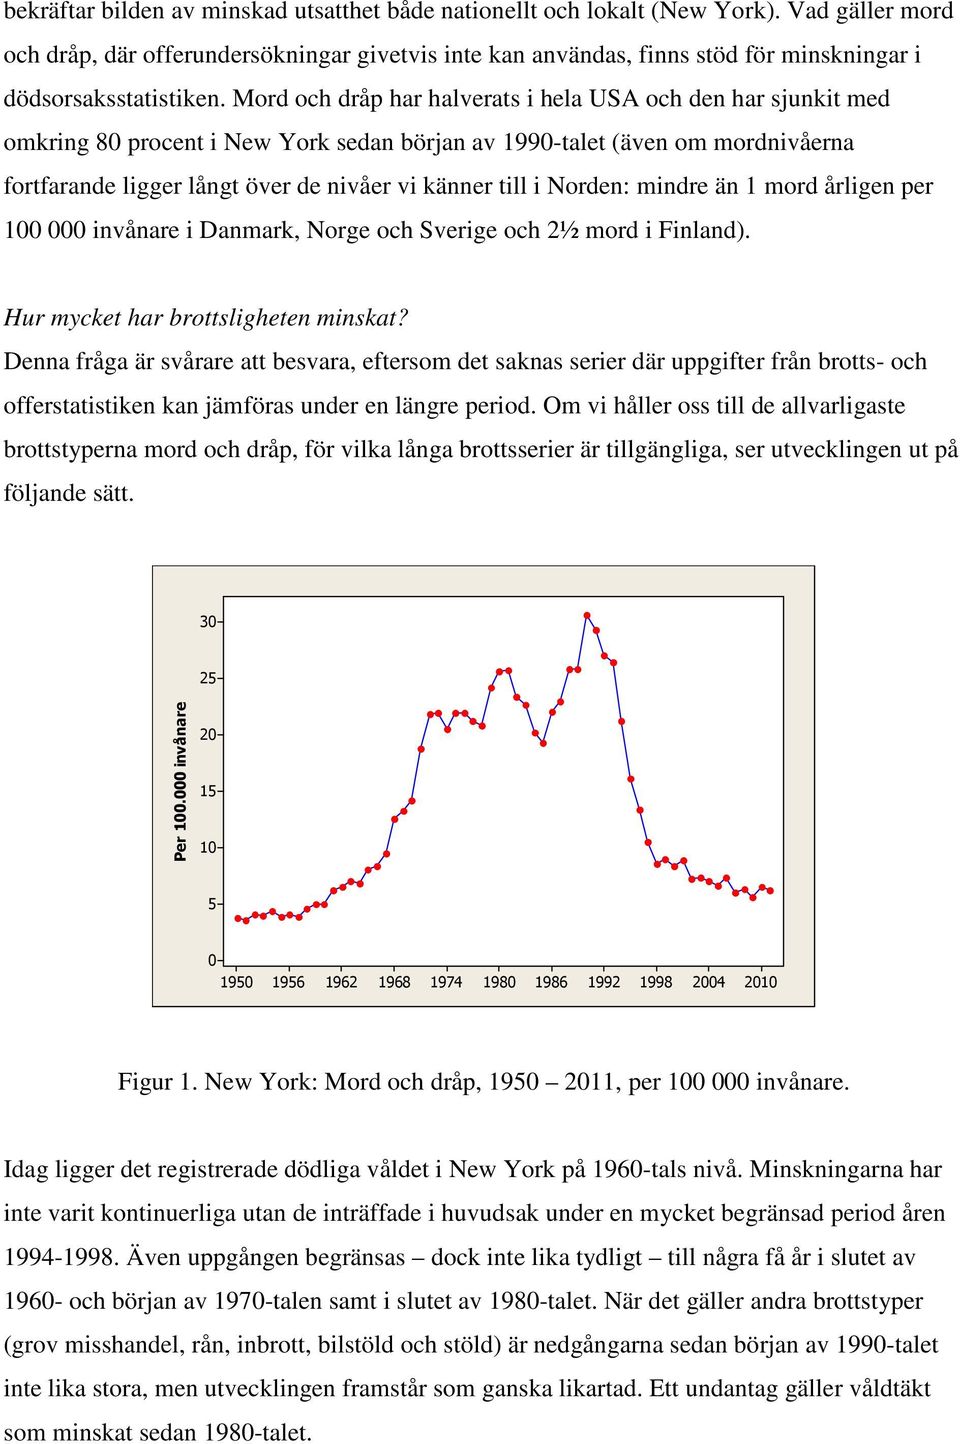 Mord och dråp har halverats i hela USA och den har sjunkit med omkring 80 procent i New York sedan början av 1990-talet (även om mordnivåerna fortfarande ligger långt över de nivåer vi känner till i